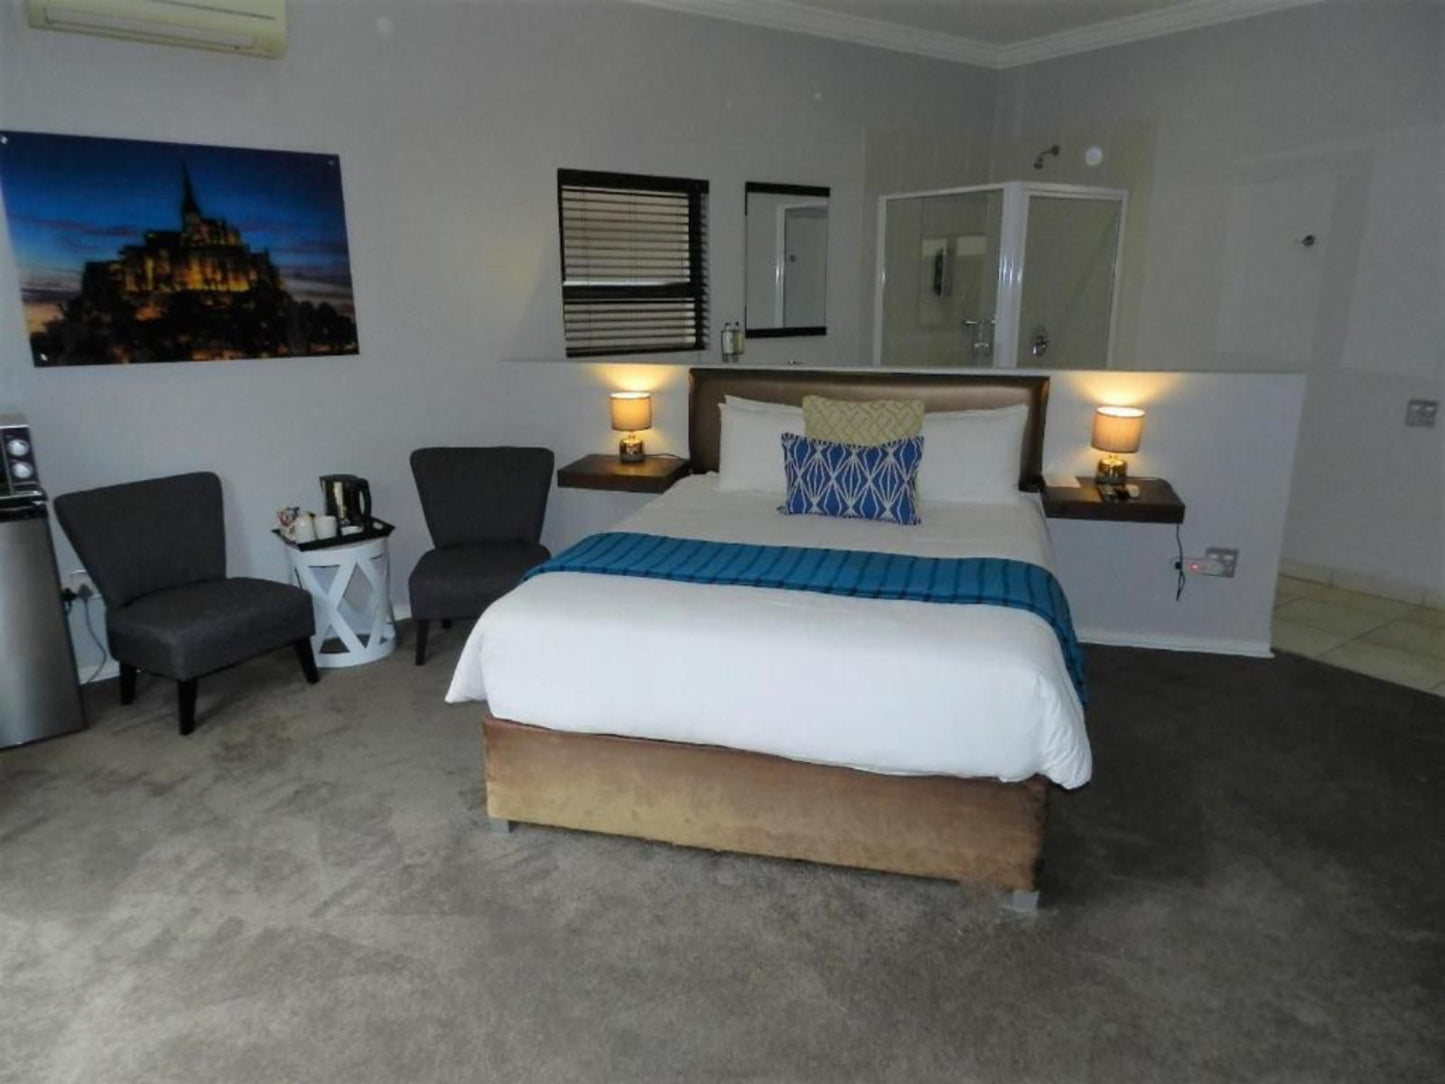 Le Petit Fillan Guesthouse Littlefillan Johannesburg Gauteng South Africa Unsaturated, Bedroom